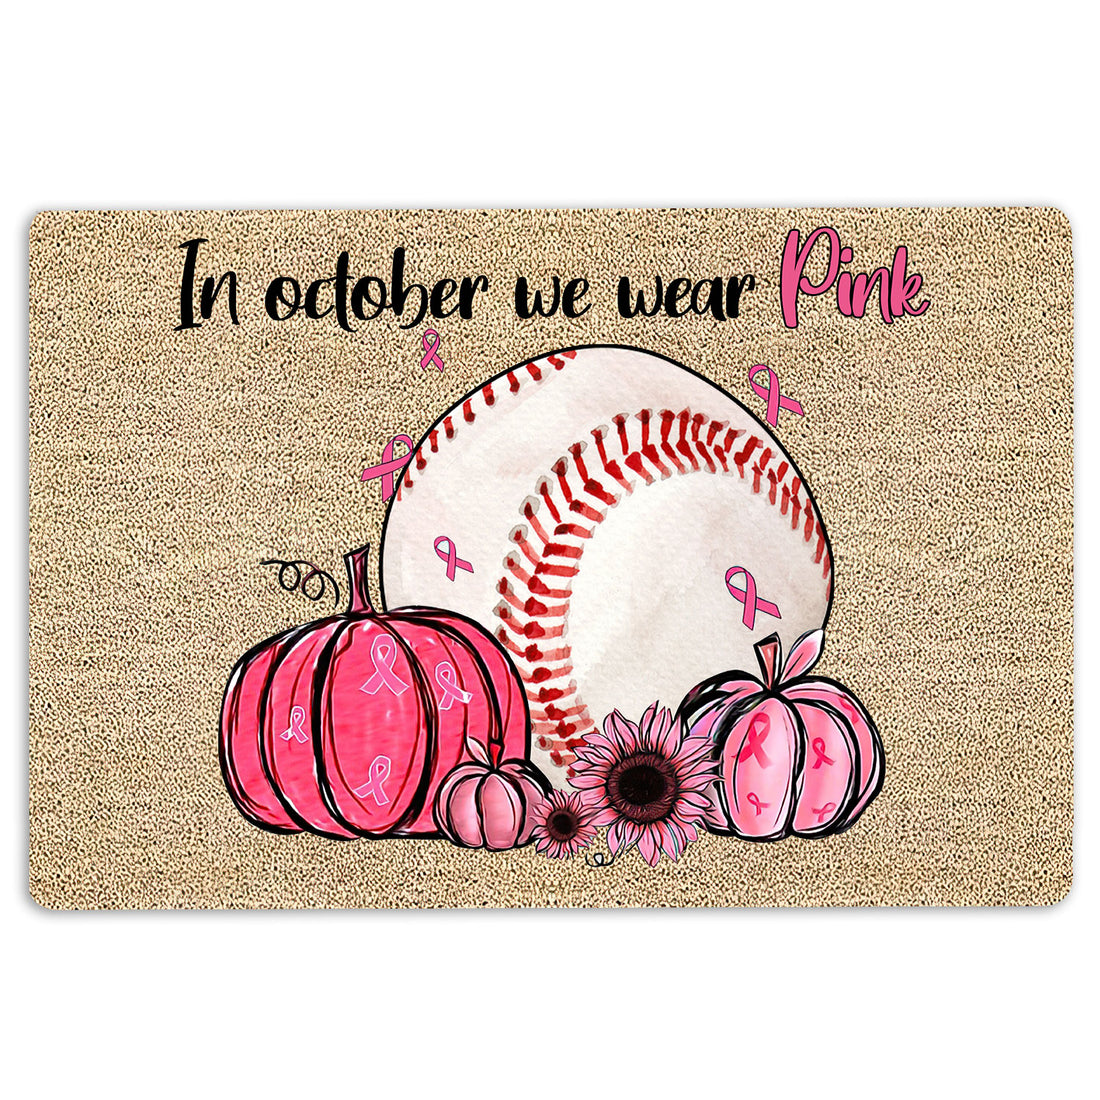 Ohaprints-Doormat-Outdoor-Indoor-Breast-Cancer-Baseball-In-October-We-Wear-Pink-Rubber-Door-Mat-1911-18'' x 30''